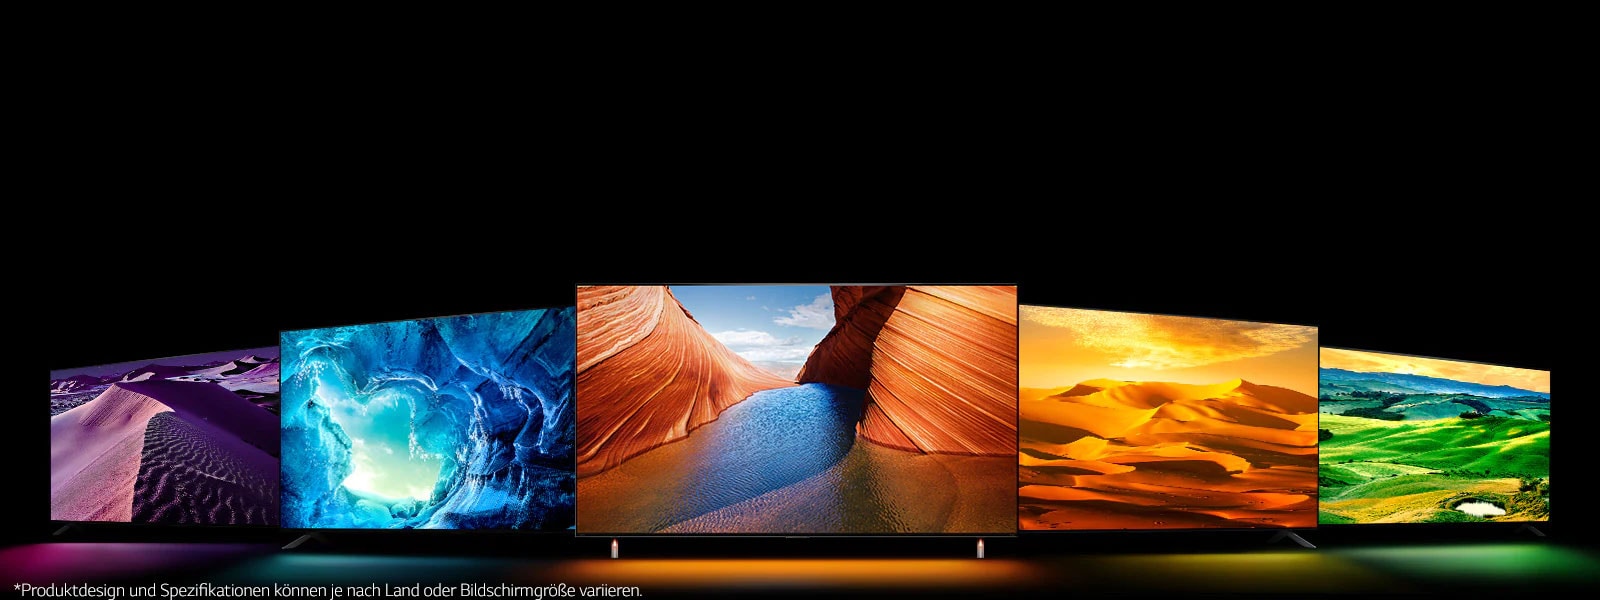 Es sind fünf QNED TVs aufgestellt – einer in der Mitte, der nach vorn gerichtet ist. Zwei Fernseher befinden sich auf der linken Seite und zwei auf der rechten Seite. Auf dem ganz linken TV ist ein violettes Wüstenbild zu sehen, danach kommt eine blaue Eishöhle, der mittige Fernseher zeigt orangefarbene Klippen getrennt durch einen Fluss, weiter rechts ist eine gelborangene Wüstenlandschaft zu sehen, und der TV ganz rechts zeigt eine weite, offene und grüne Landschaft. 